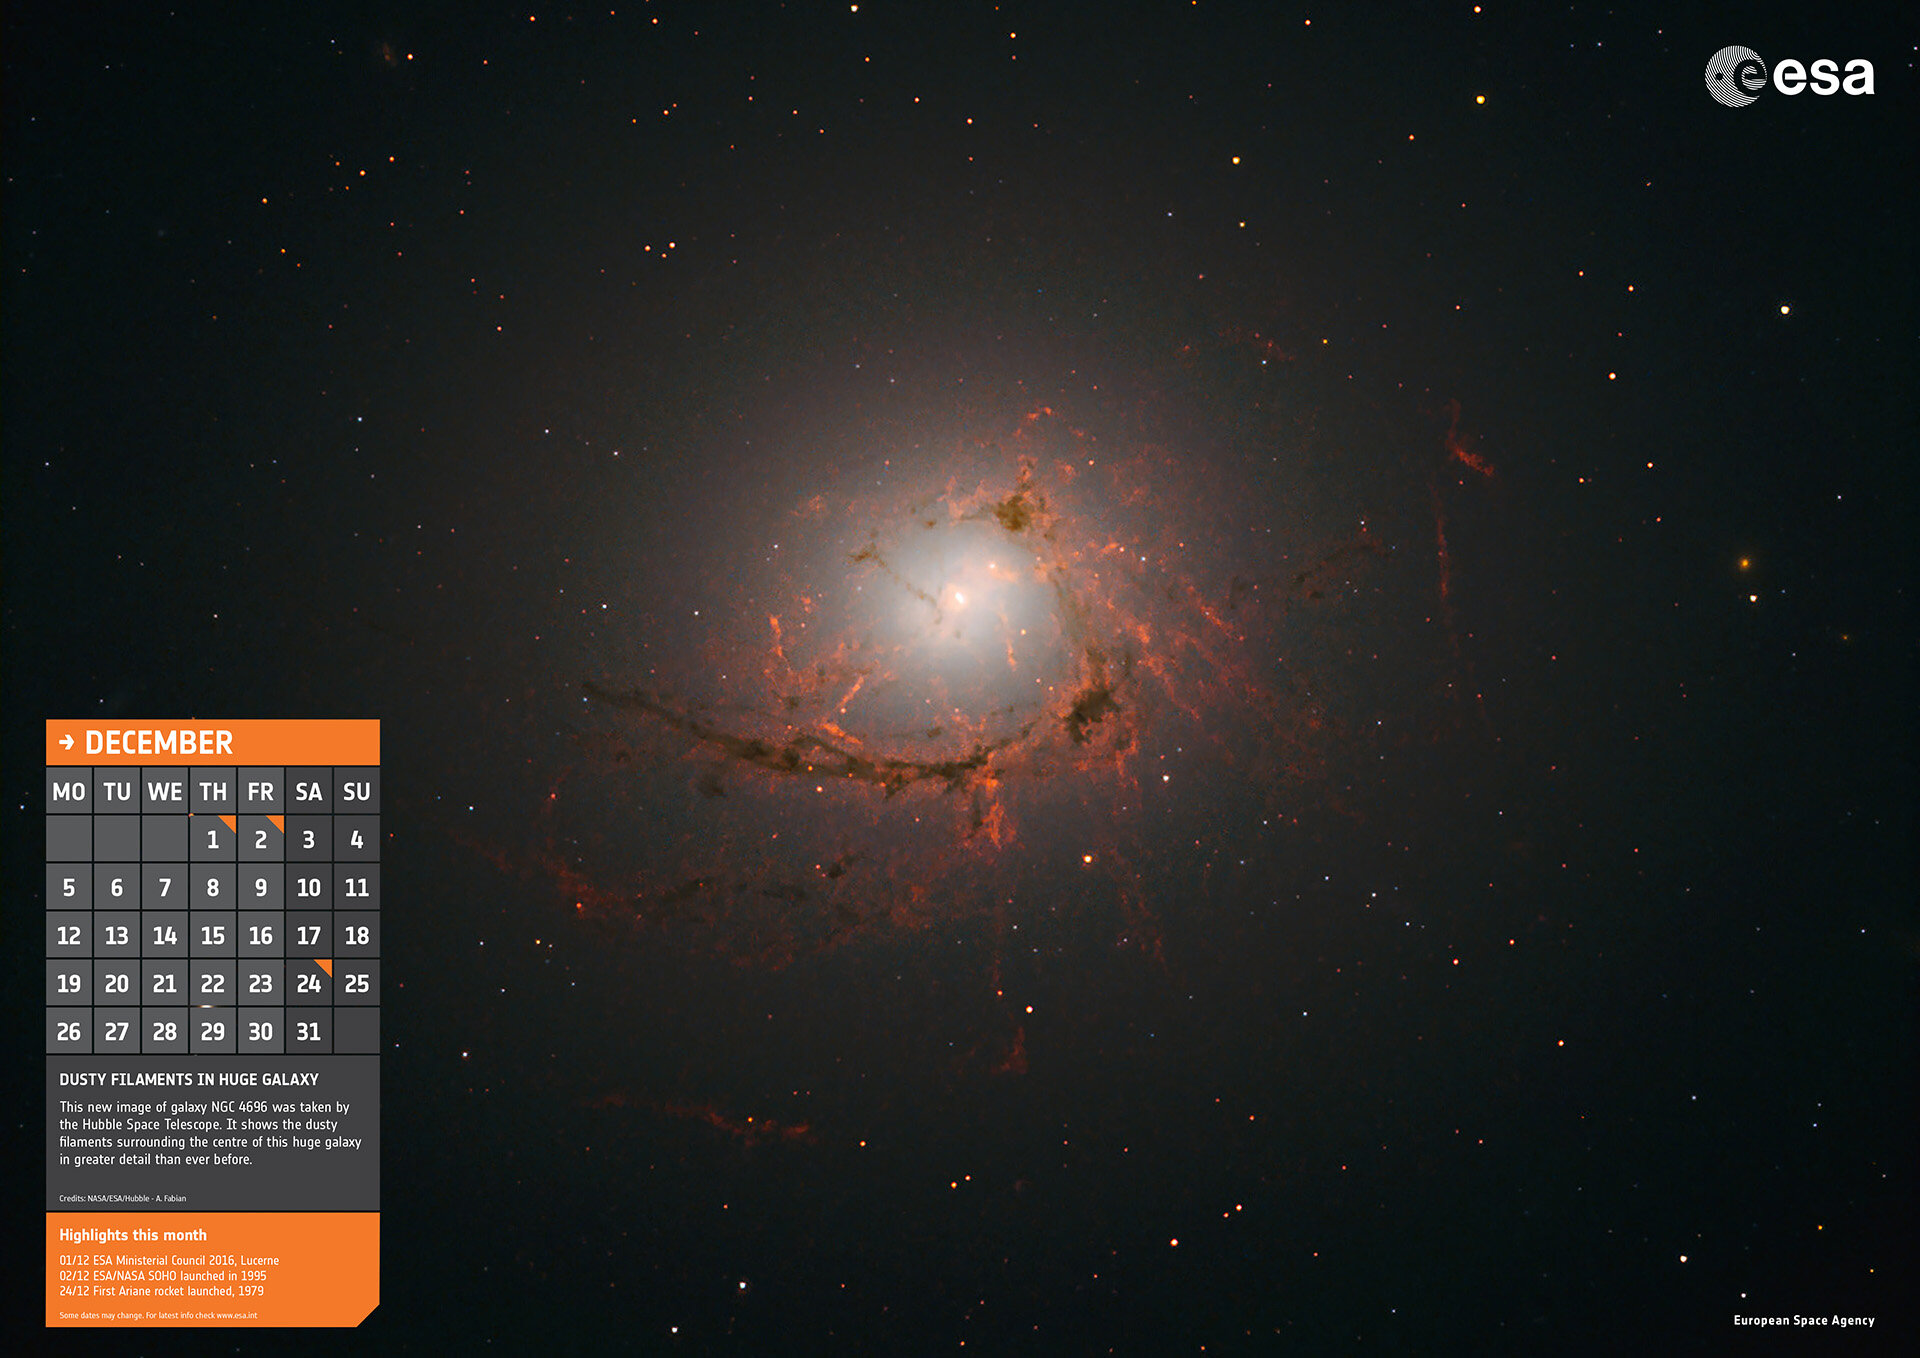 Dusty filaments in huge galaxy